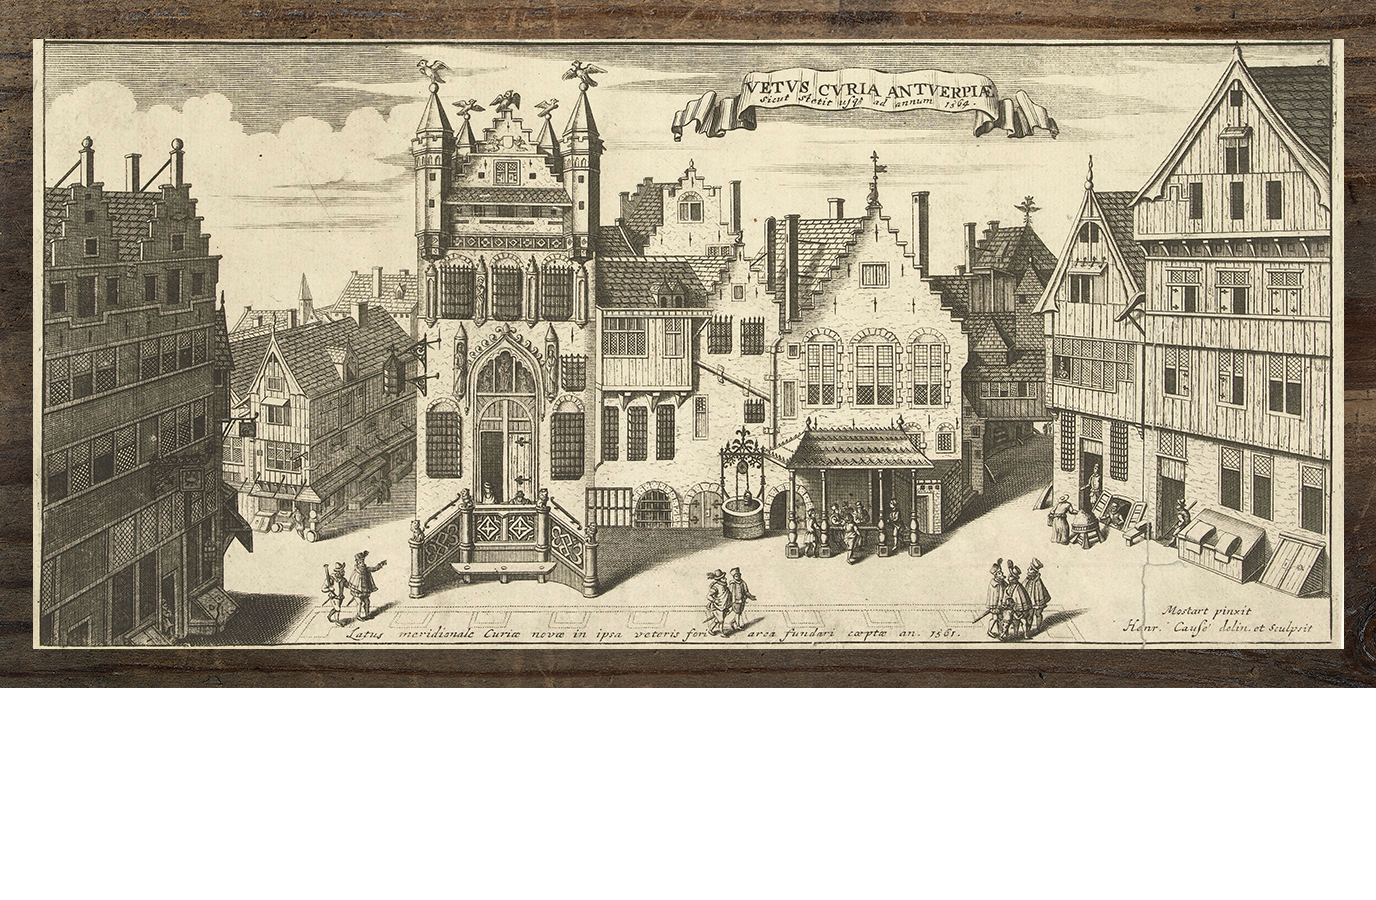 Anna Bijns (Antwerpen, 1493 – Antwerpen, 1575) groeide op in de directe omgeving van het oude stadhuis van Antwerpen (zie hierboven) en werkte er als schoolmeesteres. Bijns’ devies was: ‘Meer suers dan soets’.[7][8] (foto: Rijksmuseum, Amsterdam) Anna Bijns (Antwerp, 1493 – Antwerp, 1575) grew up near the old town hall of Antwerp (see above) and worked there as a schoolteacher. Bijns’s motto was ‘Meer suers dan soets’ (More sour than sweet).[7][8] (photo: Rijksmuseum, Amsterdam)